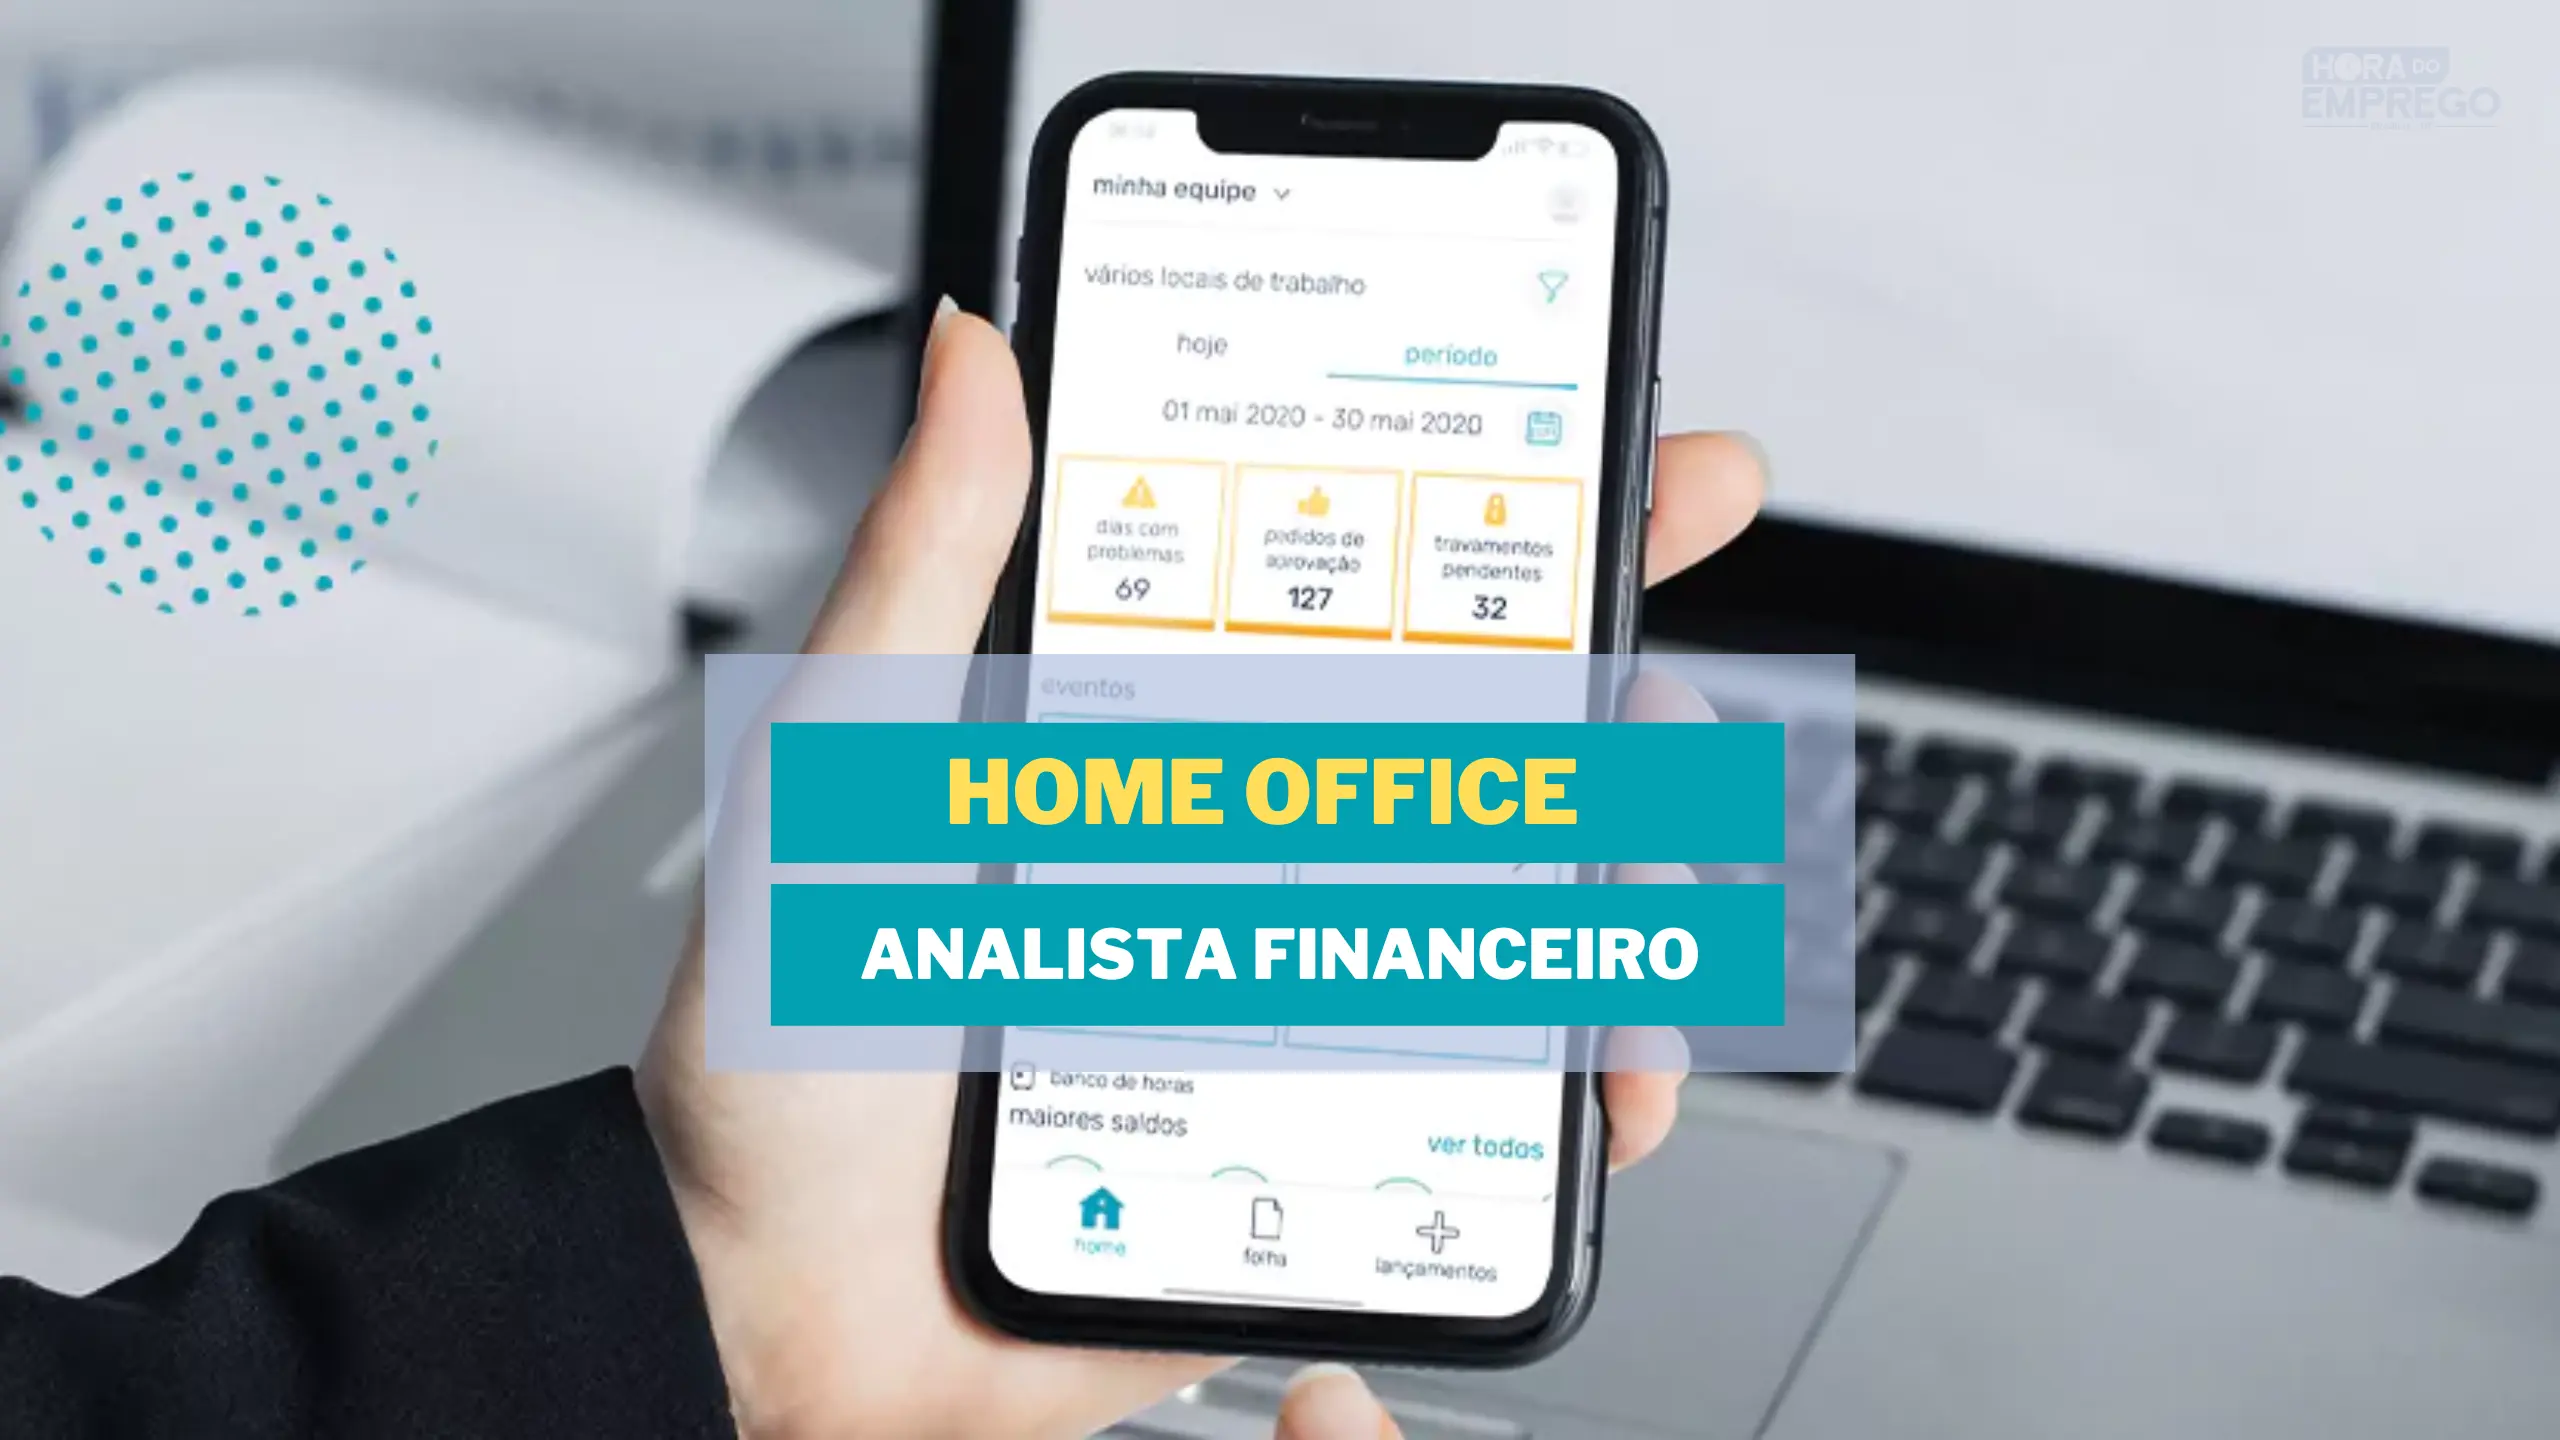 Trabalhe de casa: Pontotel abre vaga HOME OFFICE para Analista Financeiro